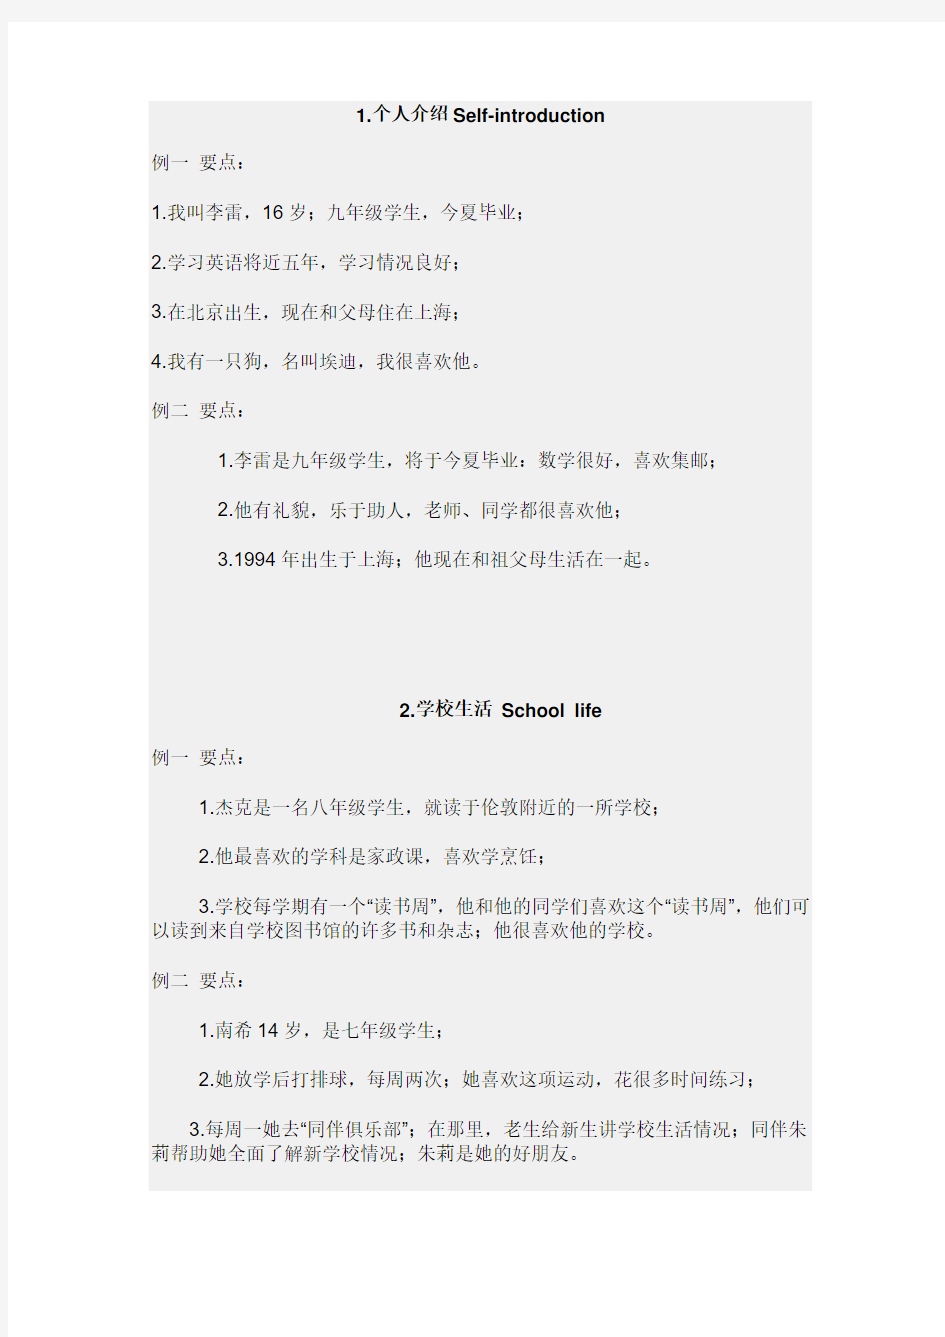 2010年江苏省初中英语听力口语自动化考试纲要(话题简述的文字部分)